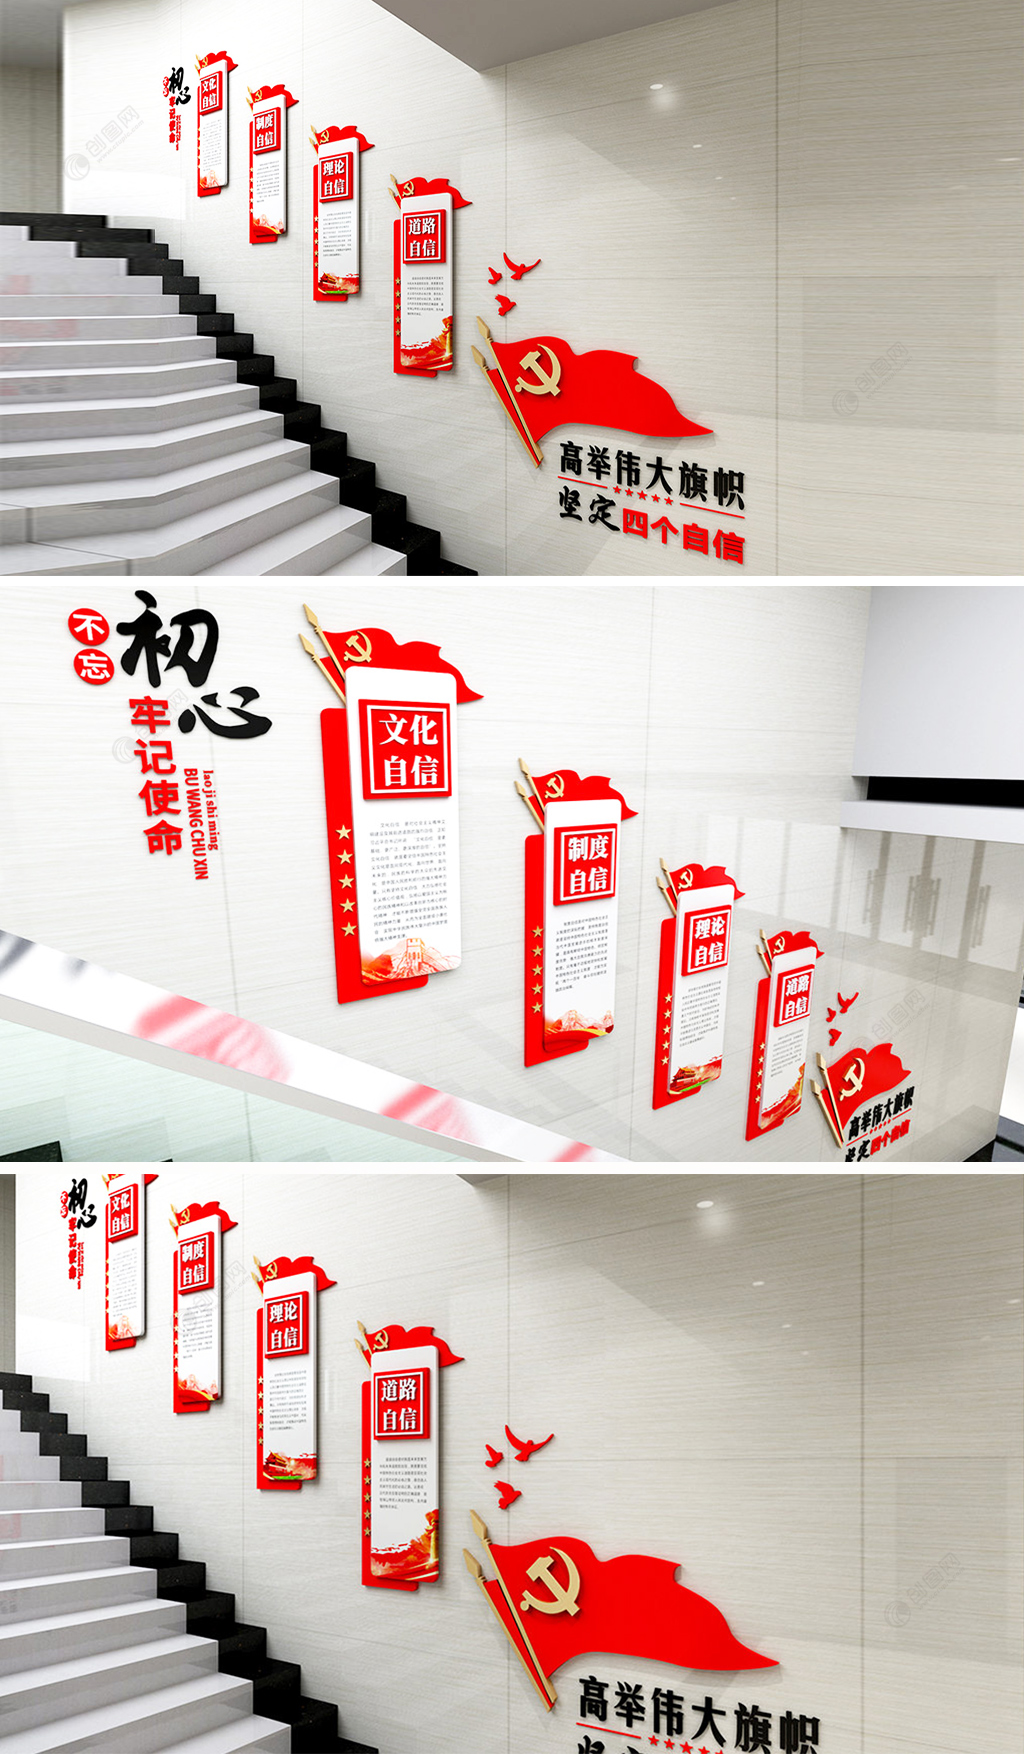 红色楼梯文化墙四个自信楼道党建文化墙设计图